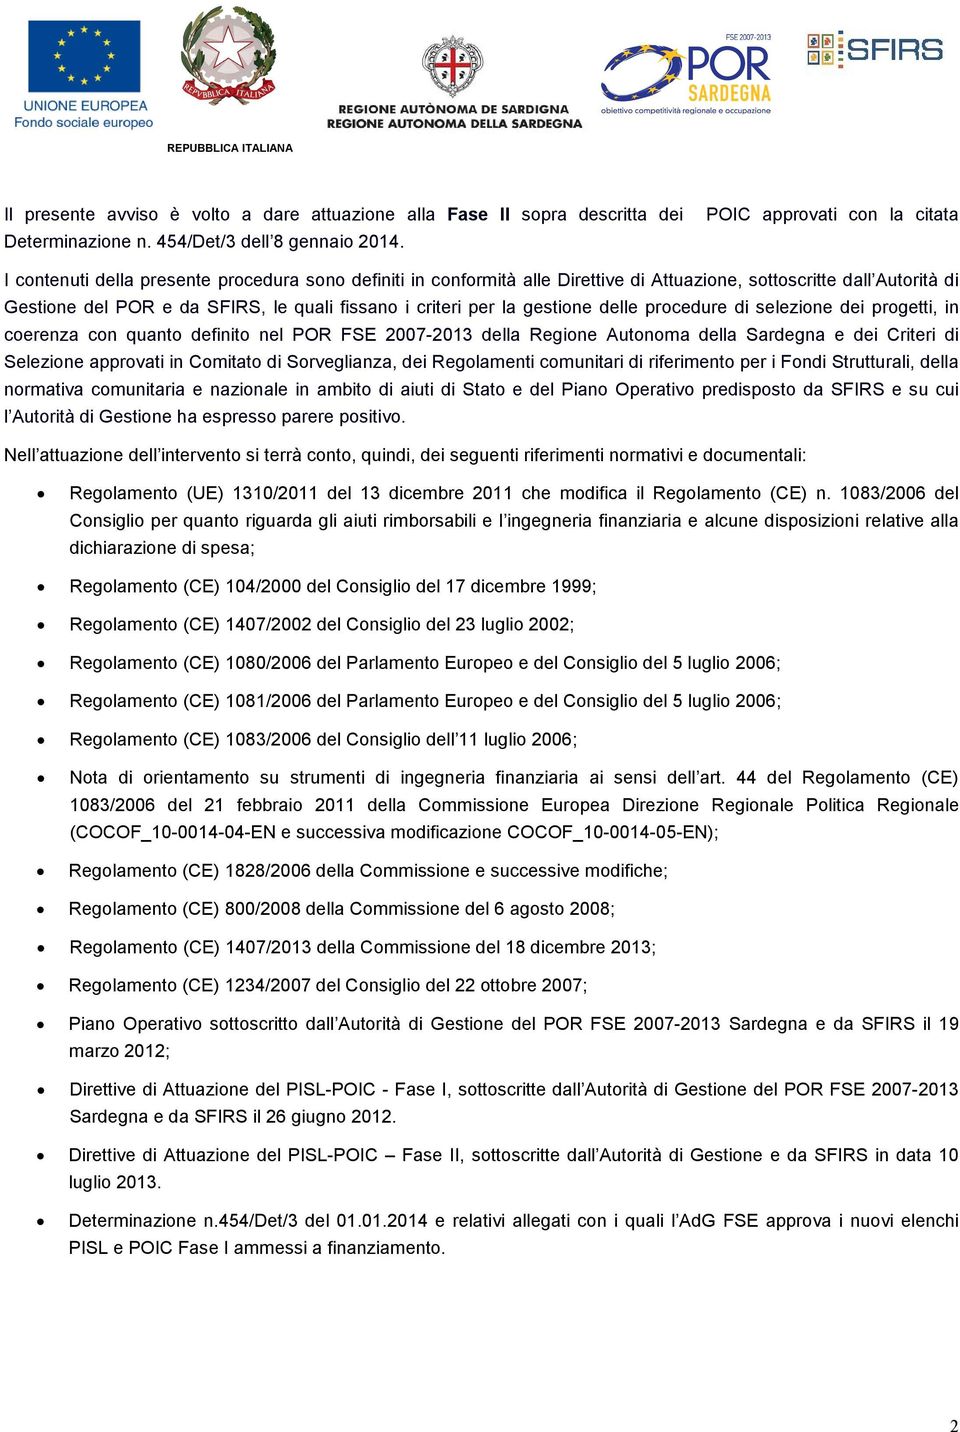 delle procedure di selezione dei progetti, in coerenza con quanto definito nel POR FSE 2007-2013 della Regione Autonoma della Sardegna e dei Criteri di Selezione approvati in Comitato di